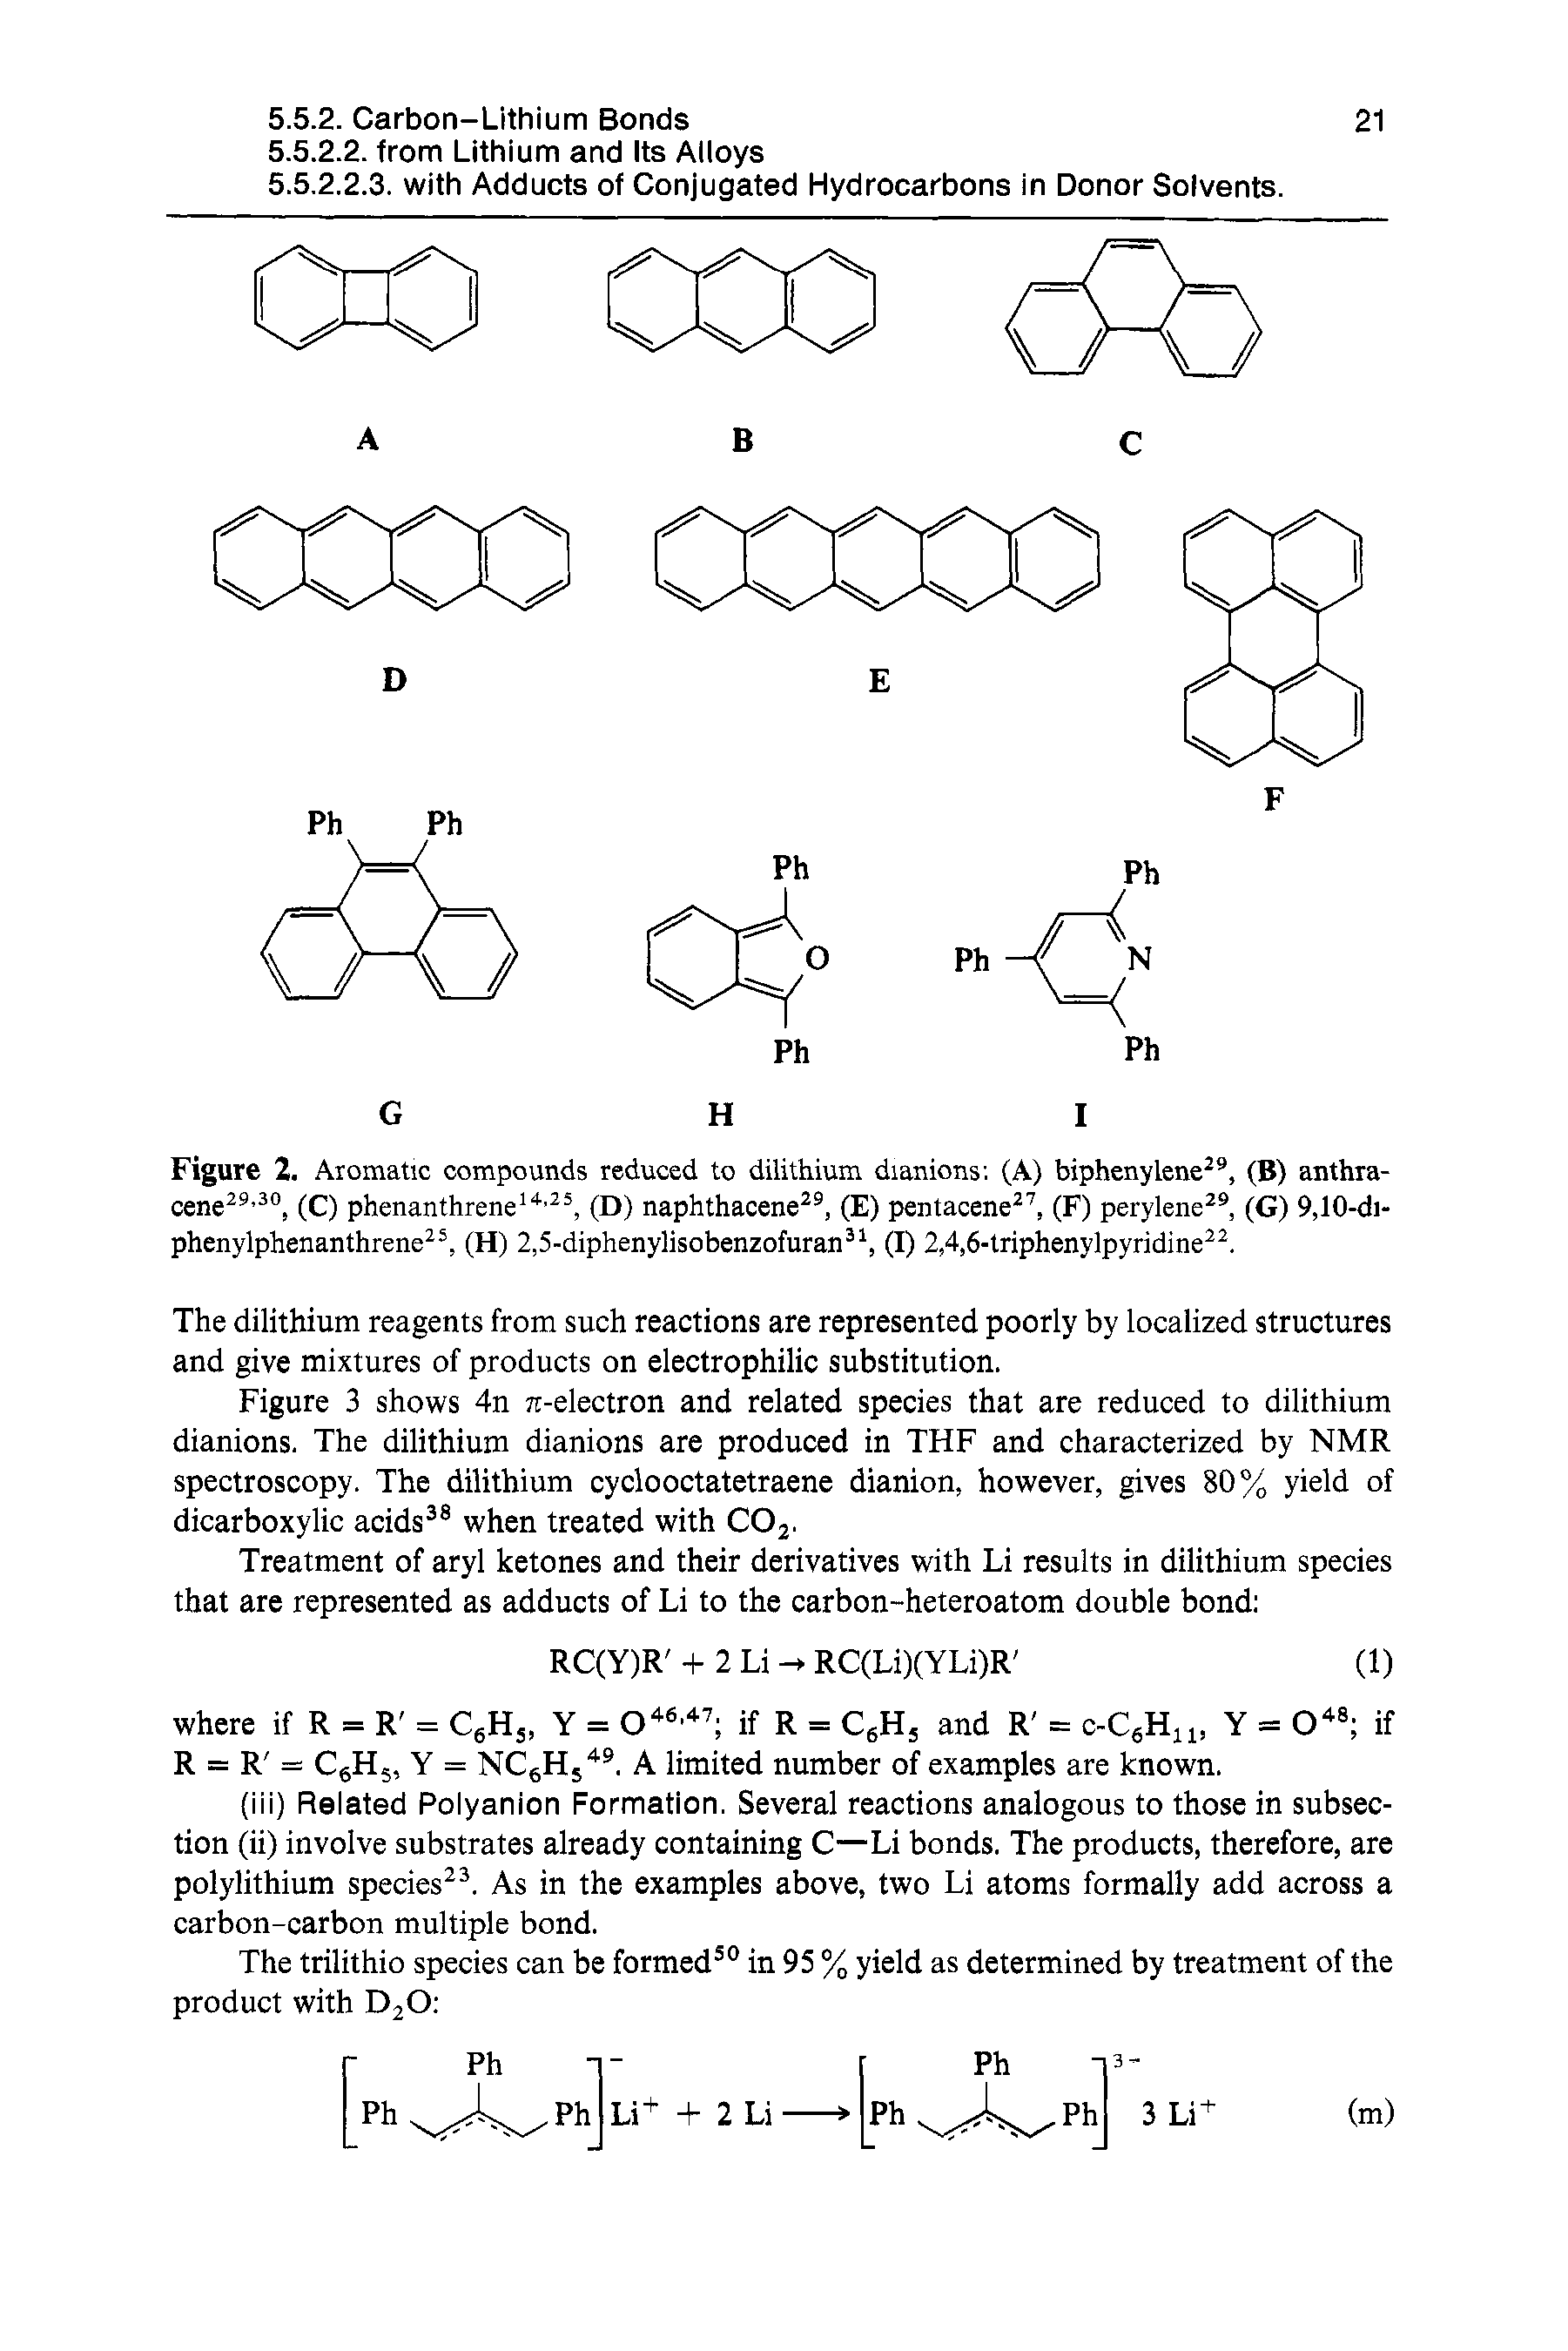 Figure 2. Aromatic compounds reduced to dilithium dianions (A) biphenylene , (B) anthra-cene ", (C) phenanthrene , (D) naphthacene , (E) pentacene , (F) perylene , (G) 9,10-di-phenylphenanthrene, (H) 2,5-diphenylisobenzofuran (I) 2,4,6-lriphenylpyridine. ...